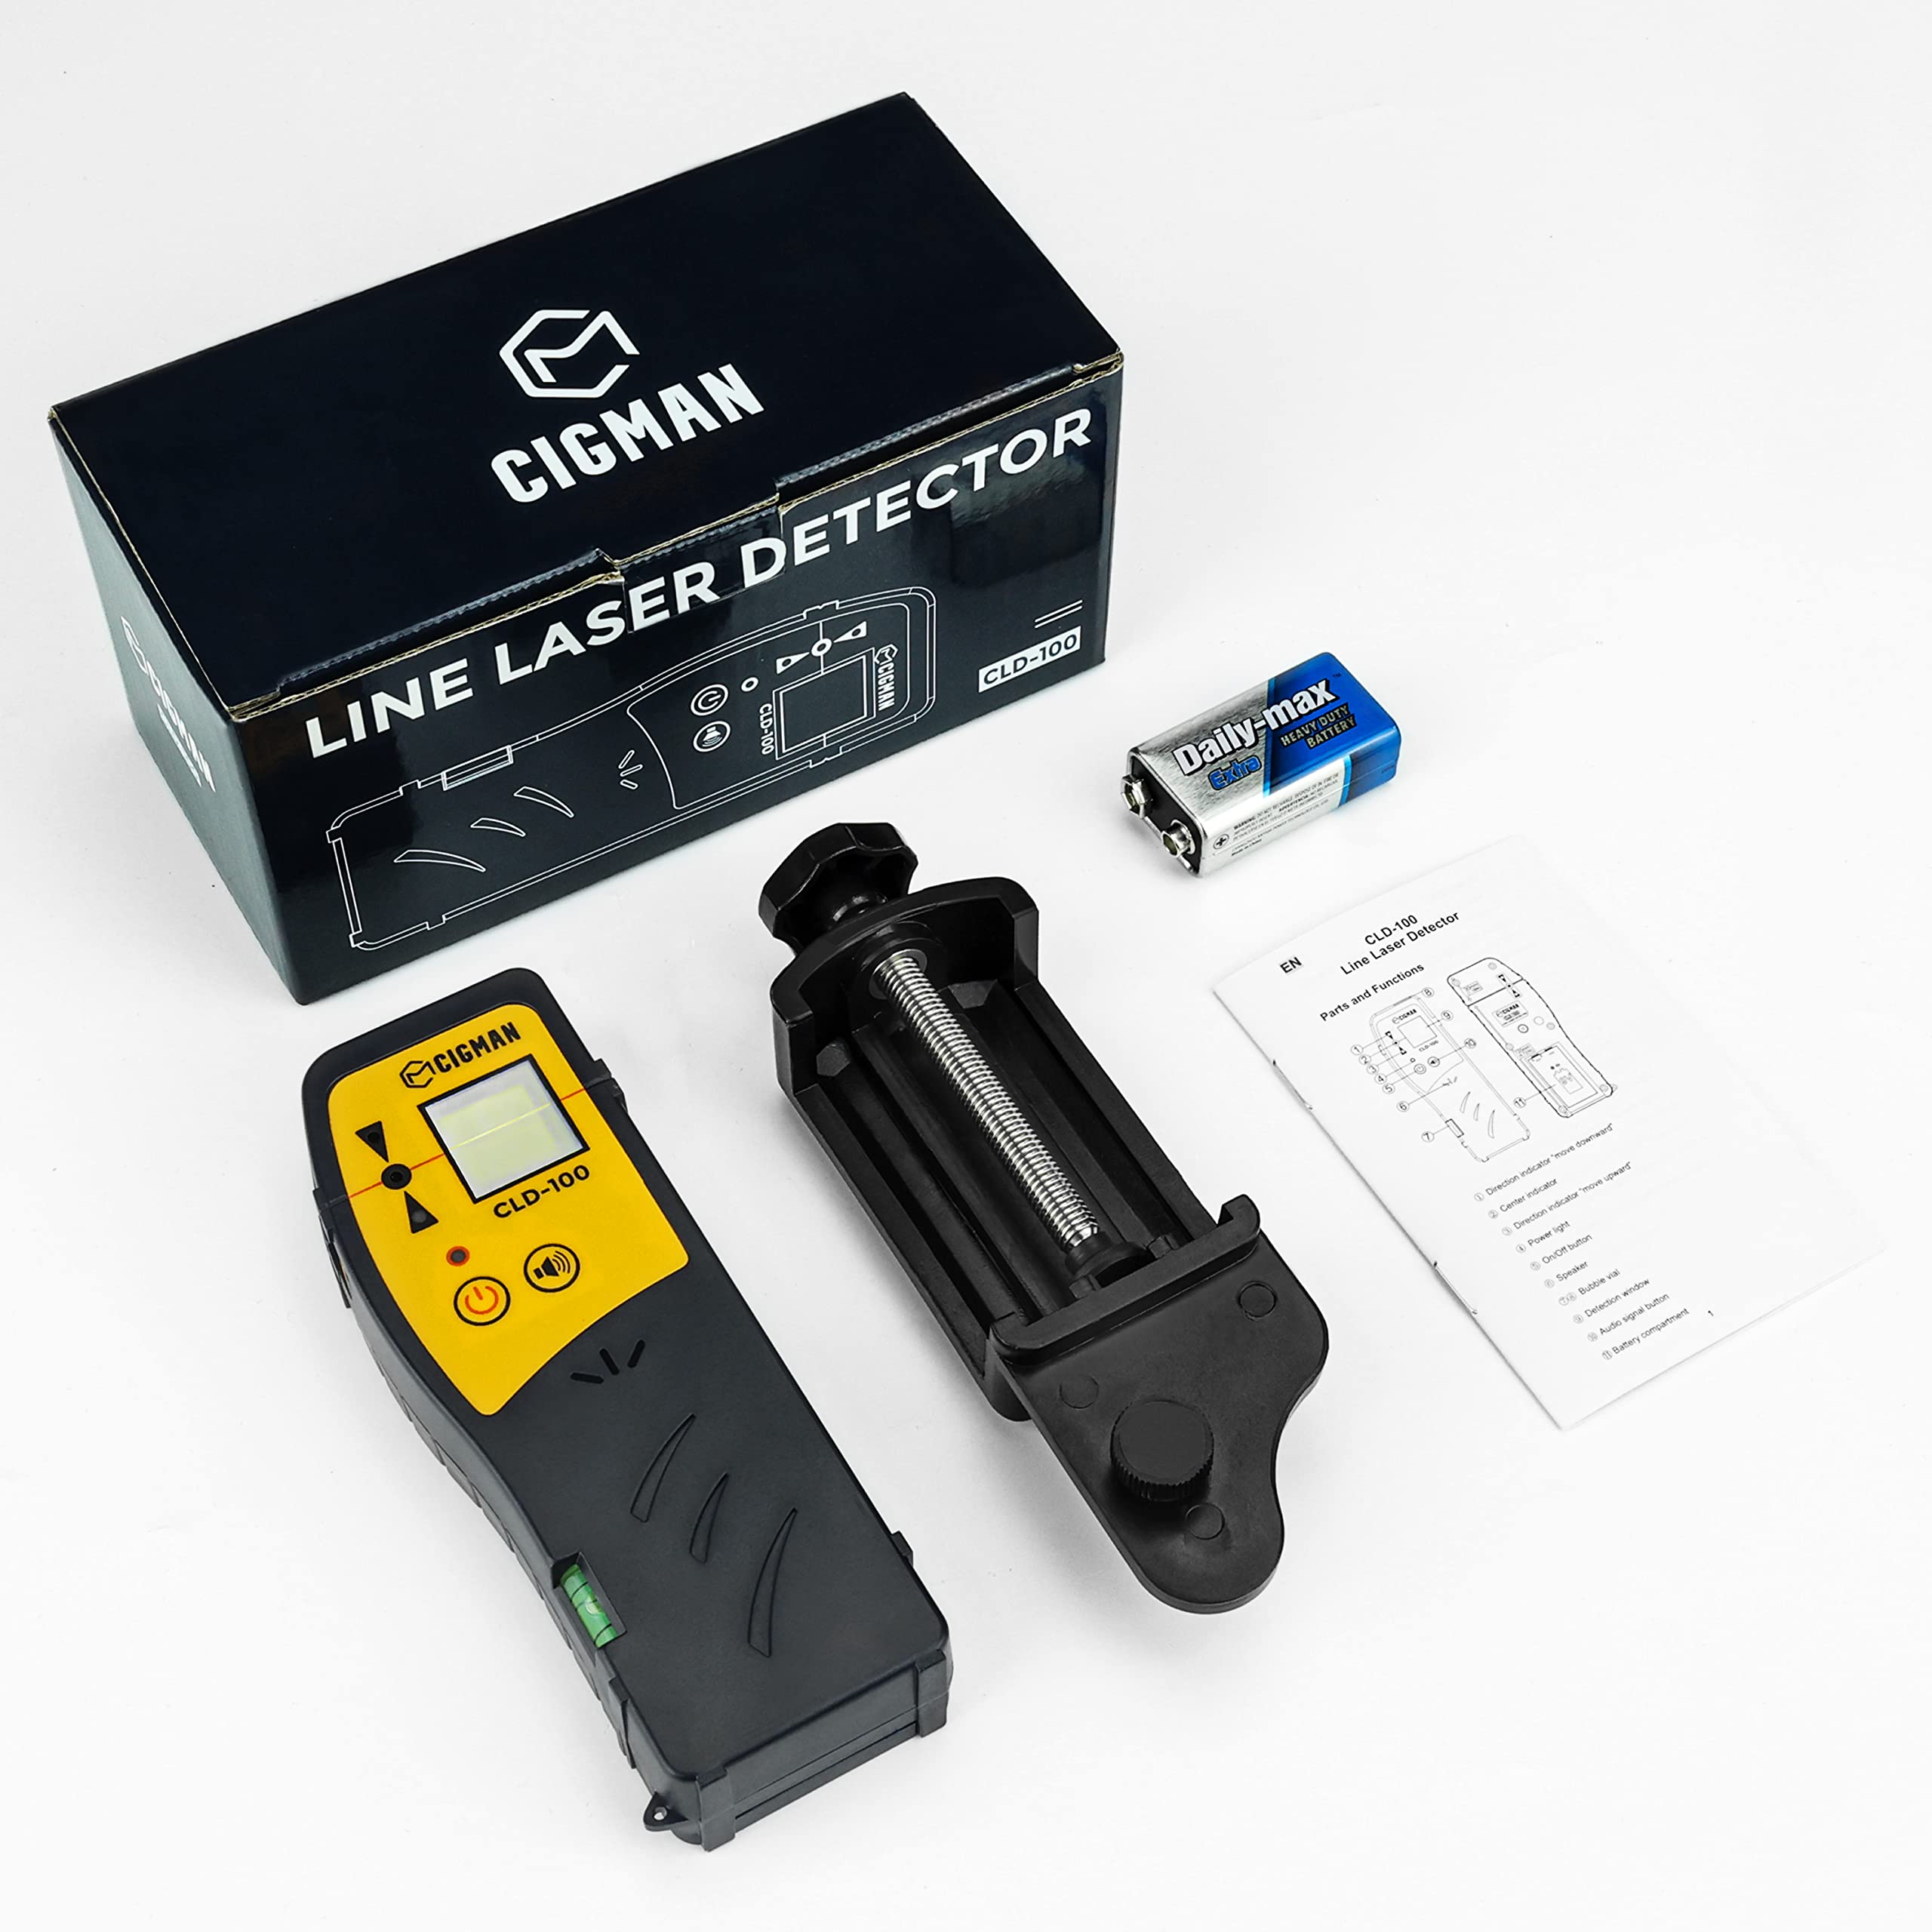 CIGMAN CLD-100 Détecteur laser pour niveau laser ligne, récepteur laser vert et faisceau rouge pour lasers ligne pulsés jusqu'à 165 pieds, récepteur laser numérique avec écrans LED sur trois côtés, pince à tige incluse